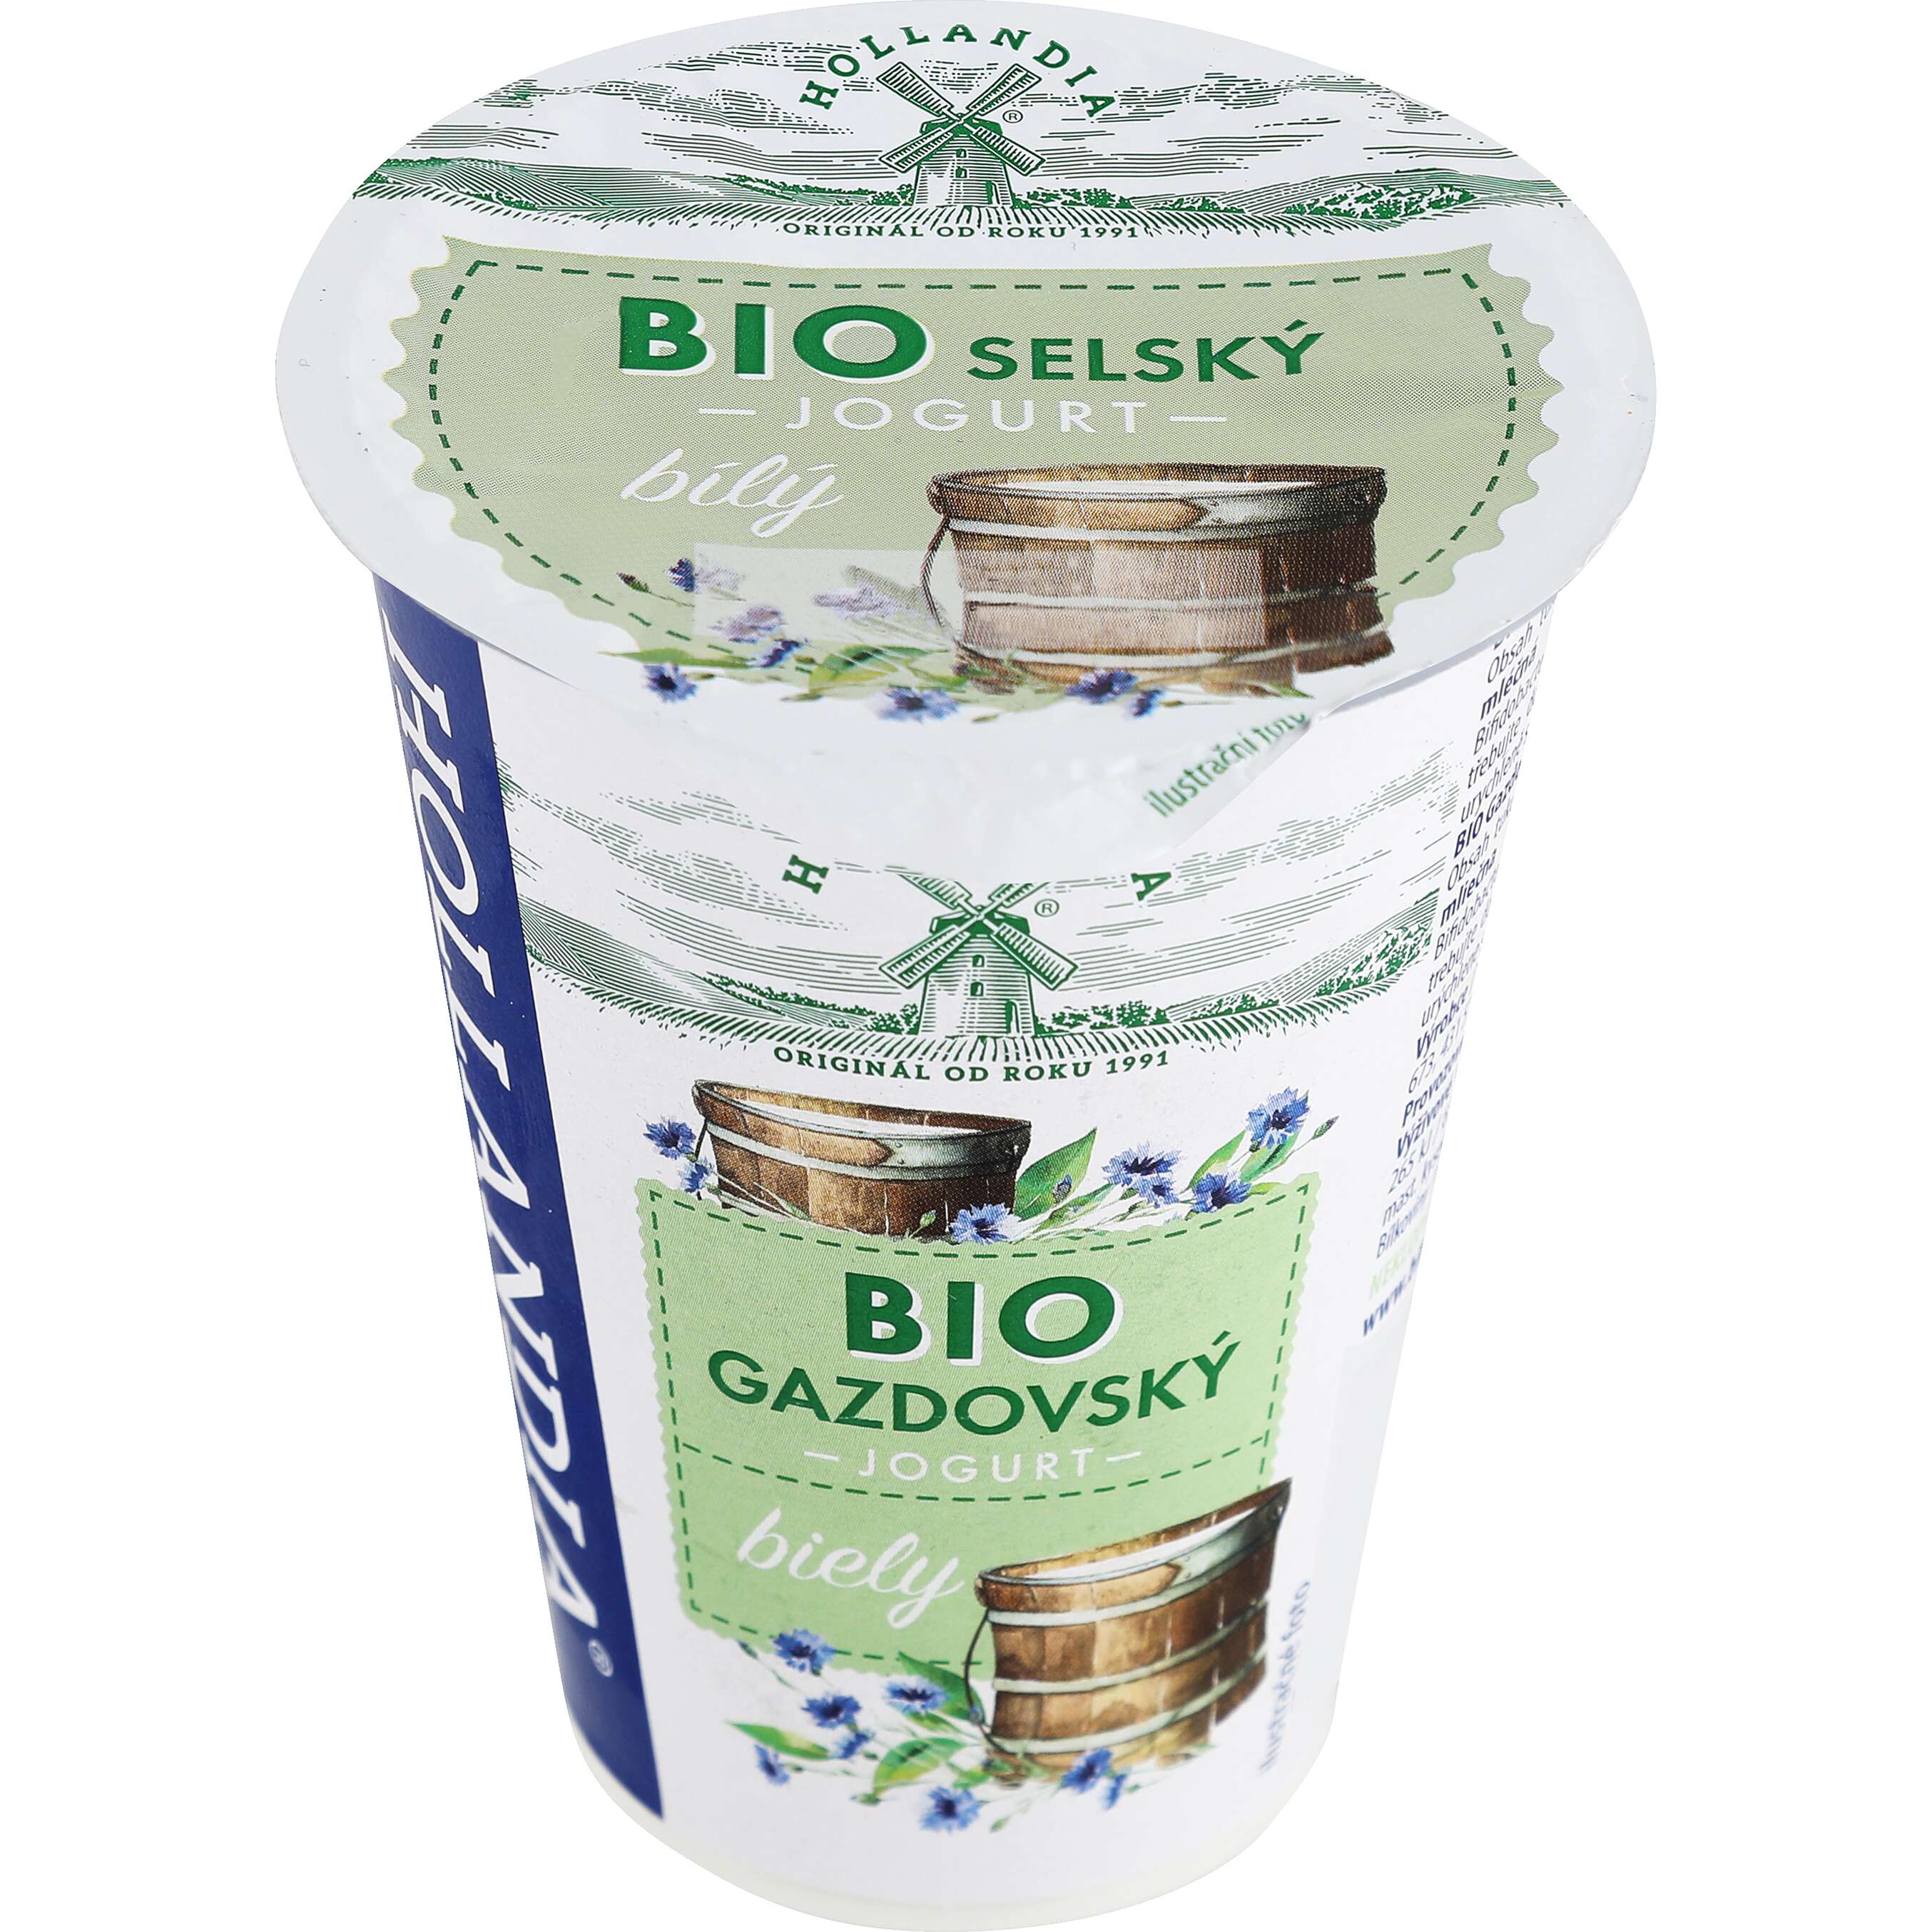 Zobrazenie výrobku Hollandia Gazdovský Bio jogurt biely